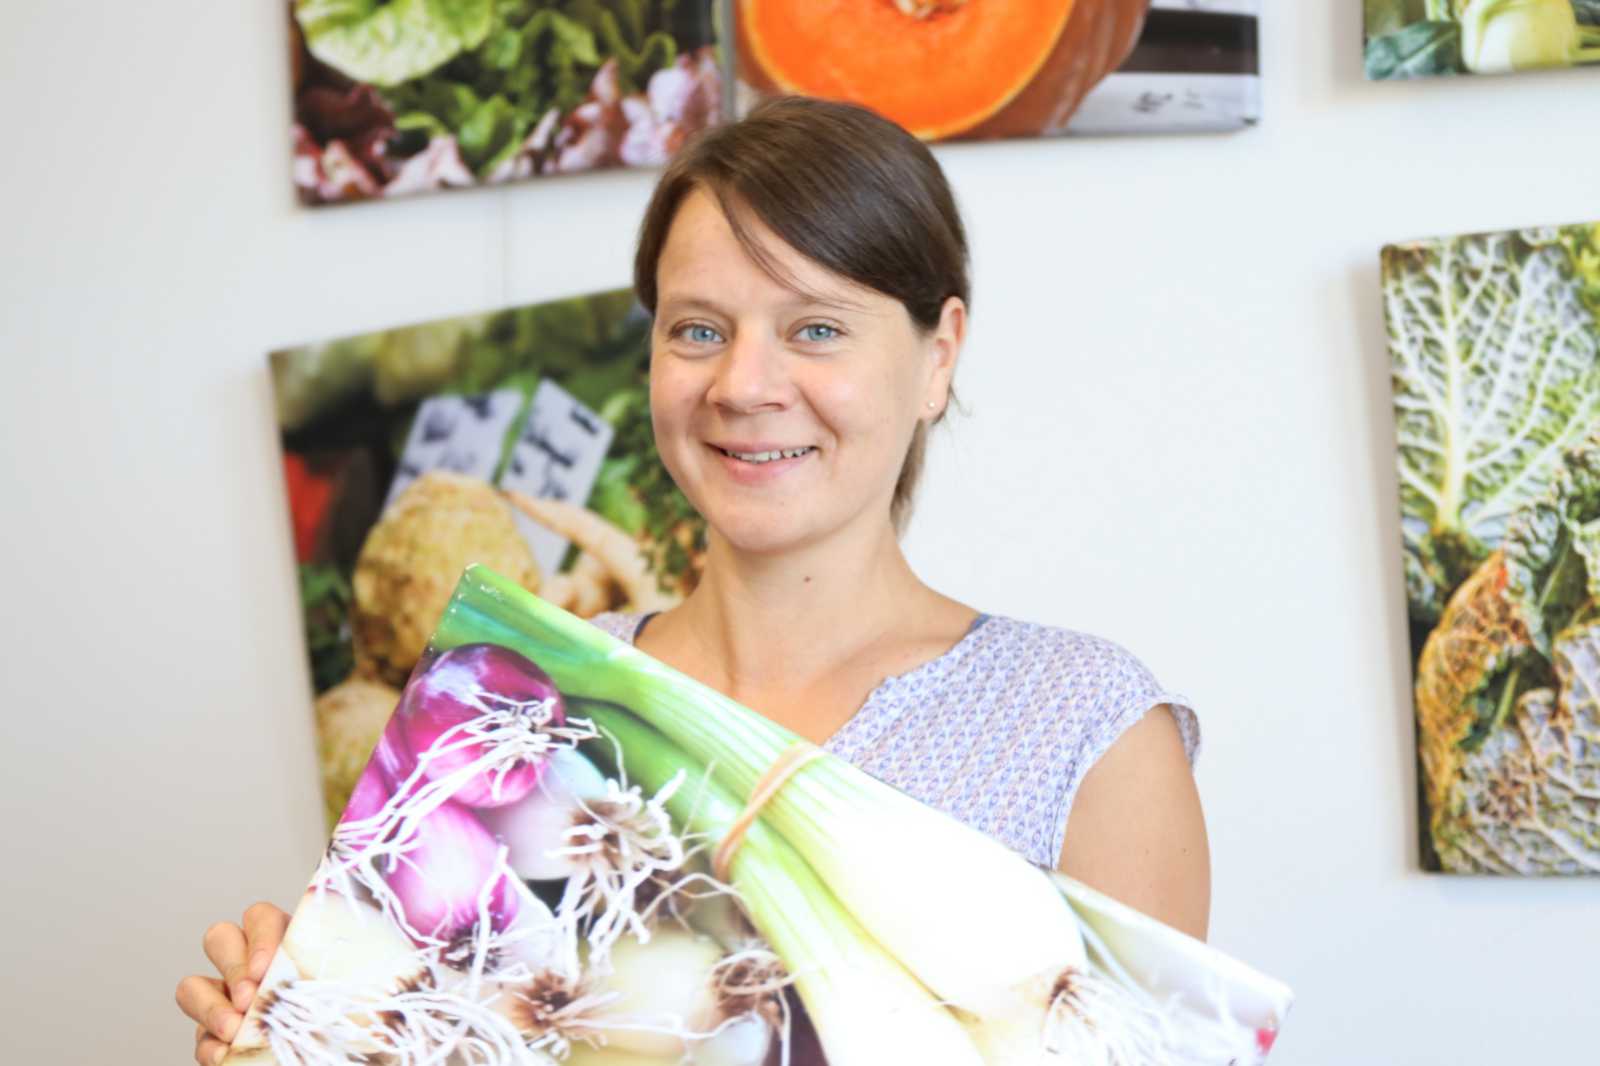 Christine Göbel forscht an der FH Münster zur Vermeidung von Lebensmittelabfällen. Bei der Aktion 